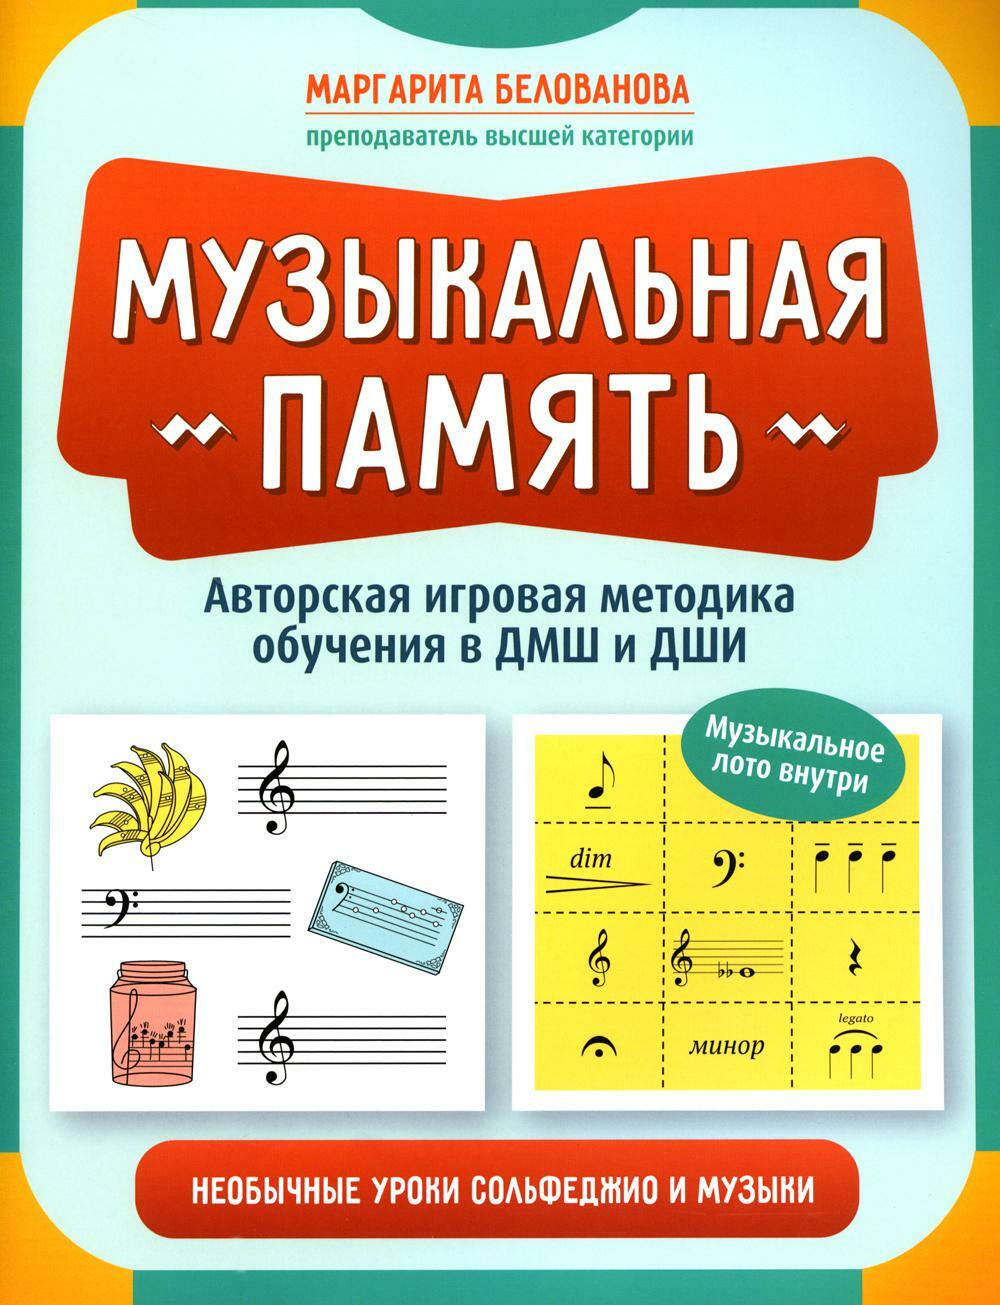 Музыкальная память: необычные уроки сольфеджио и музыки: авторская игровая методика обучения в ДМШ и ДШИ